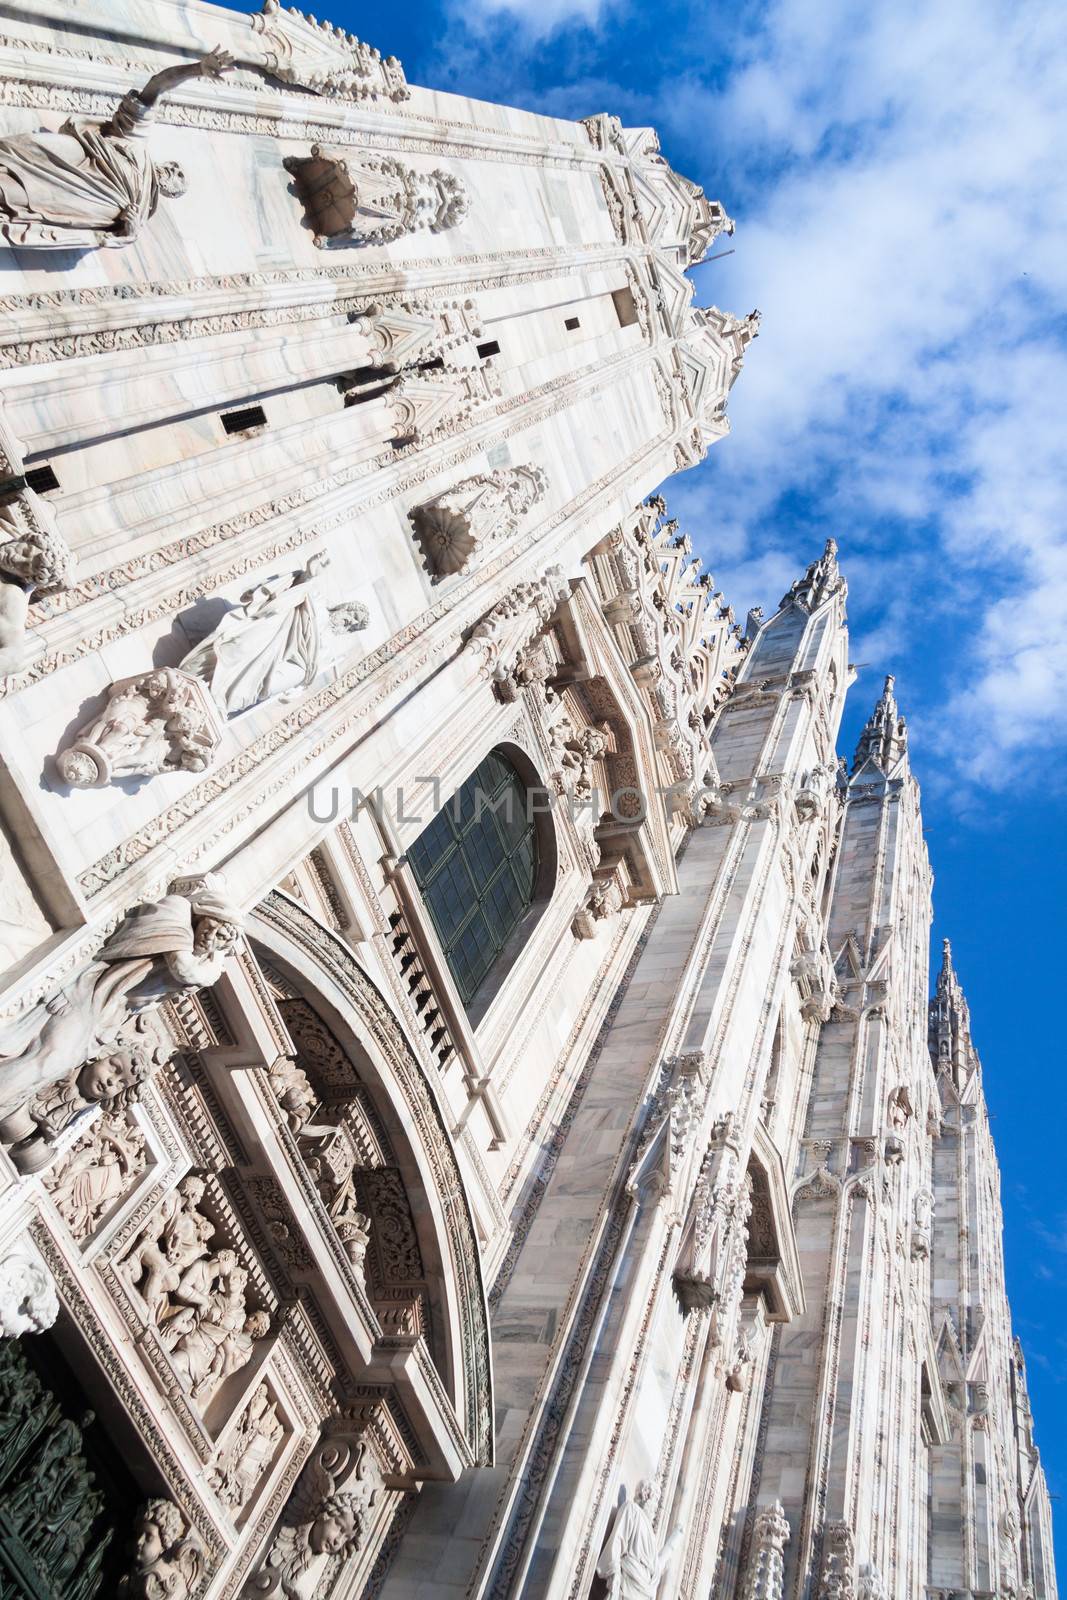 Milan Cathedral - Duomo. by kasto